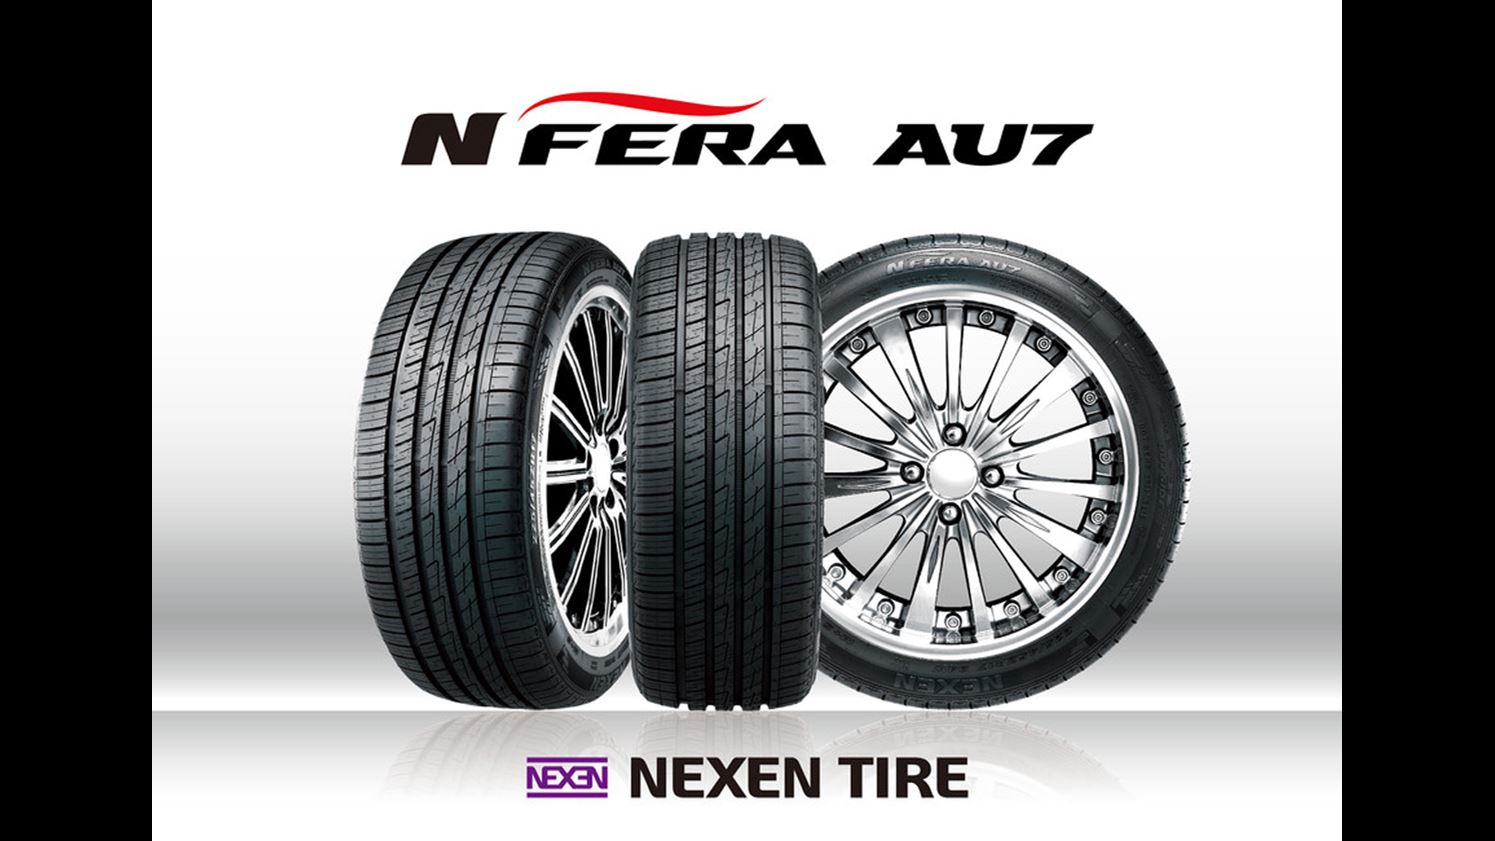 NEXEN TIRE s N FERA AU7 premium tire